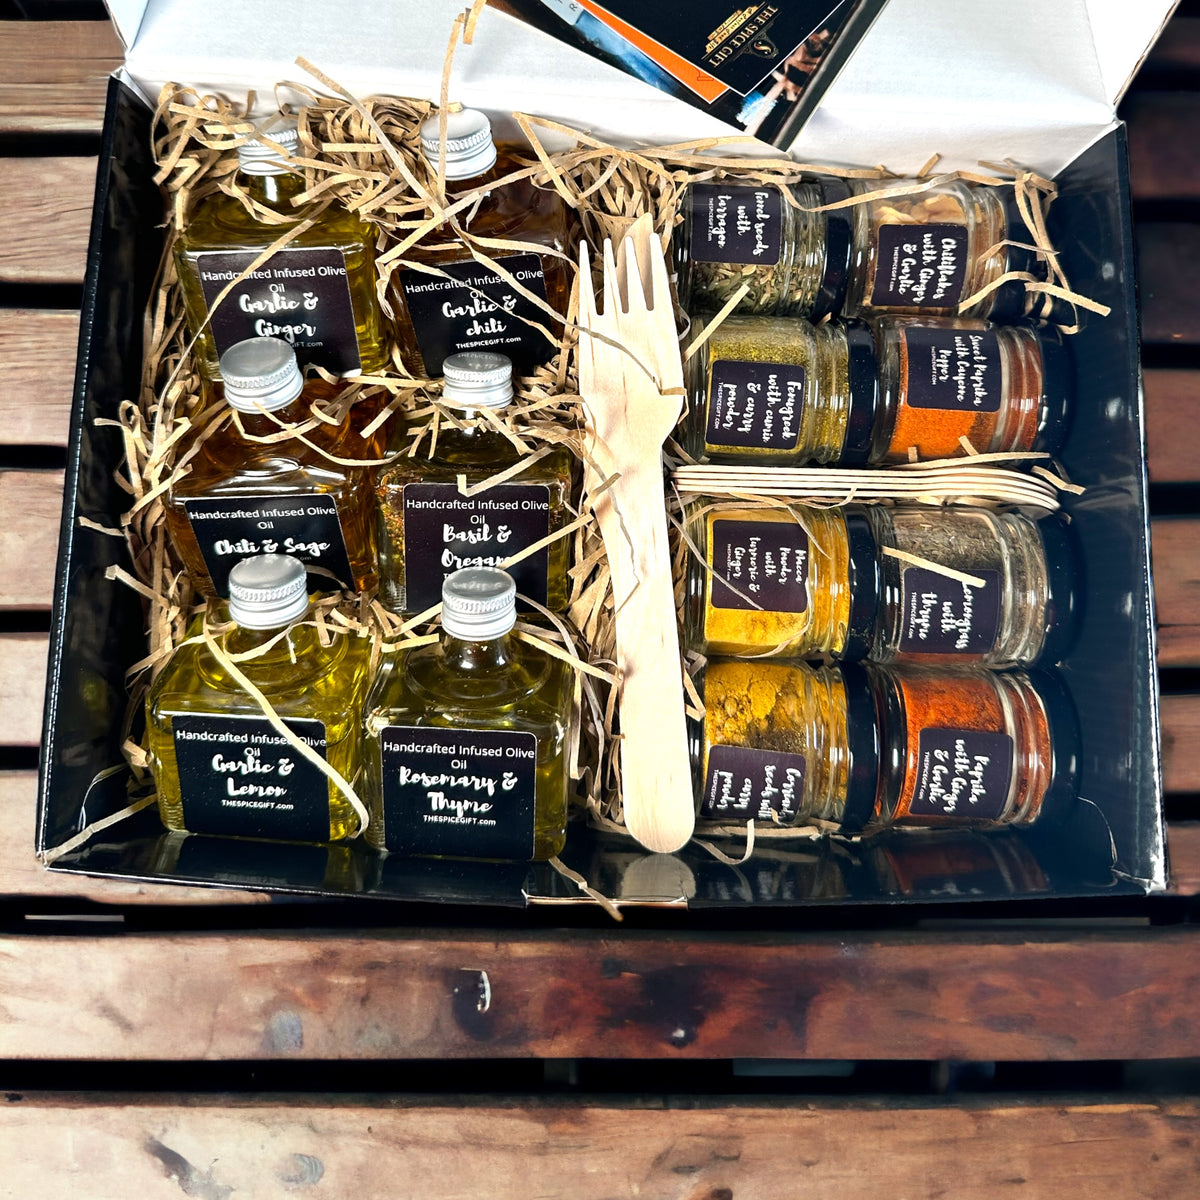 Gimber Gift Set - ShopStyle Food & Beverage  Spice gift set, Spice gift,  Bottle packaging